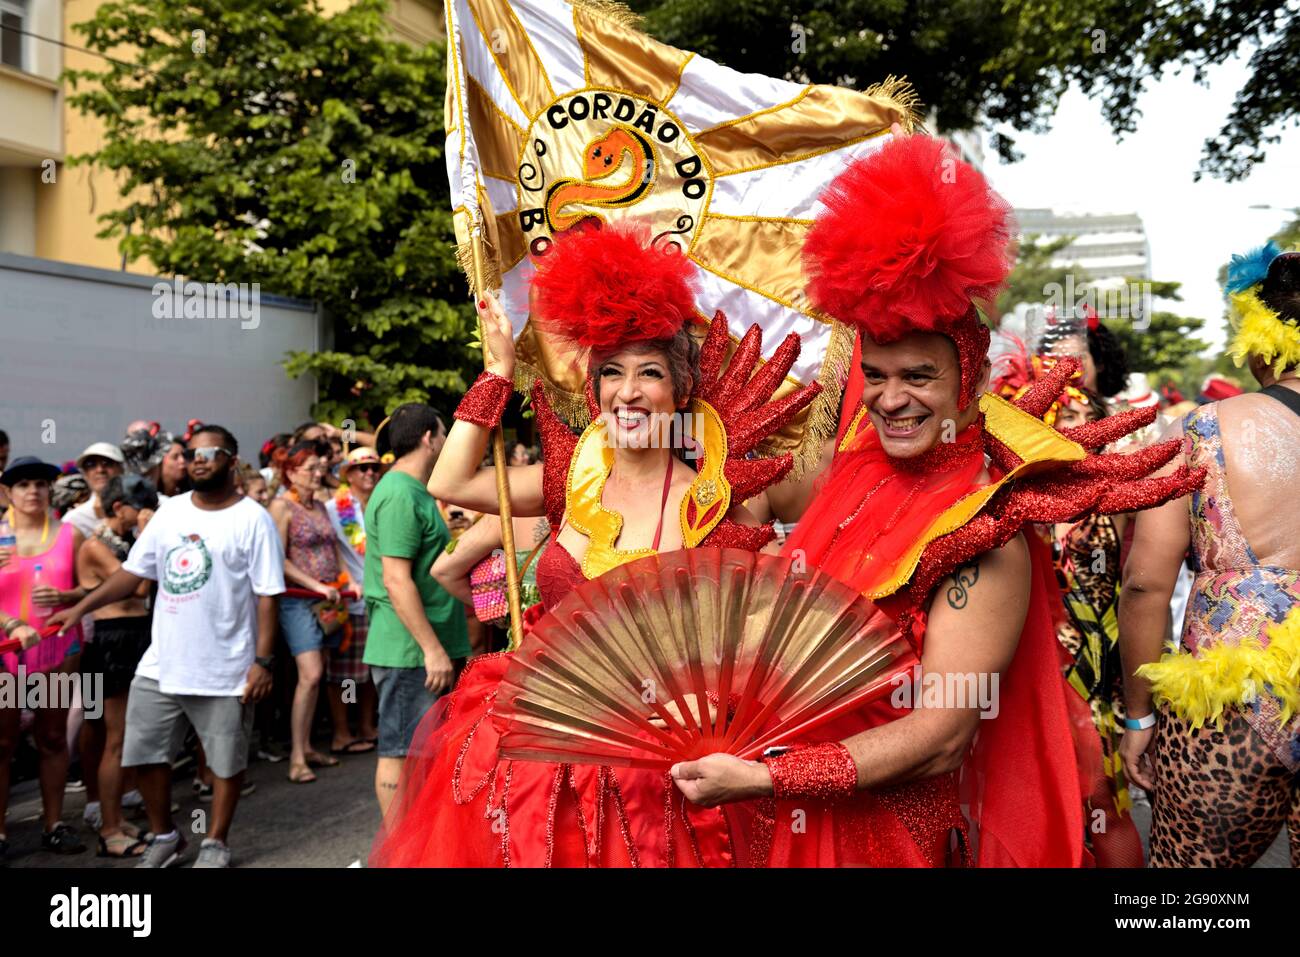 Brasile-16 febbraio 2020: Felici festeggiatori in costume celebrano l'inizio del Carnevale di Rio de Janeiro, uno dei festival più rinomati del mondo Foto Stock